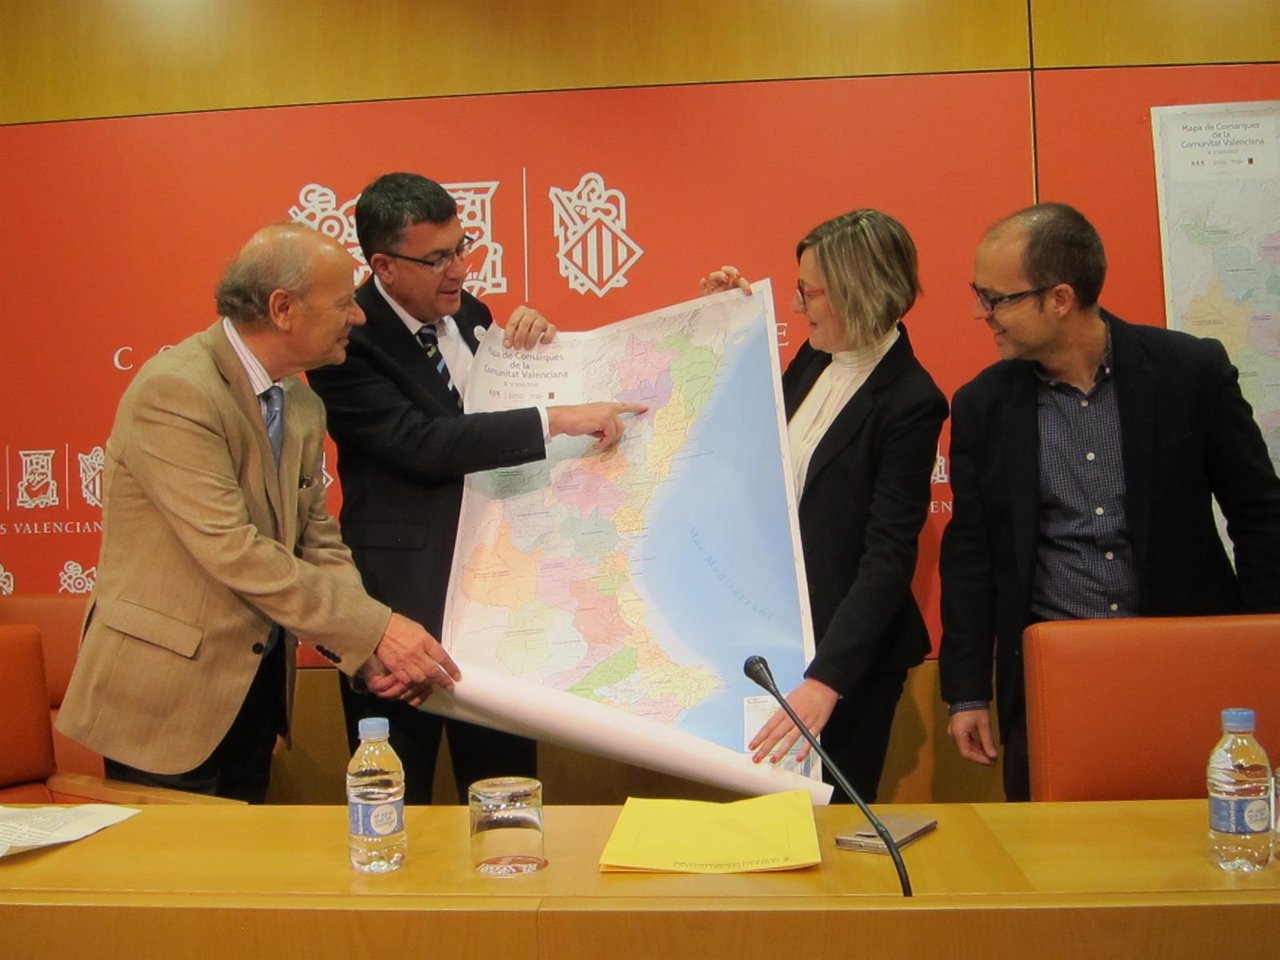 Presentación del Mapa Oficial de les Comarques de la Comunitat Valenciana